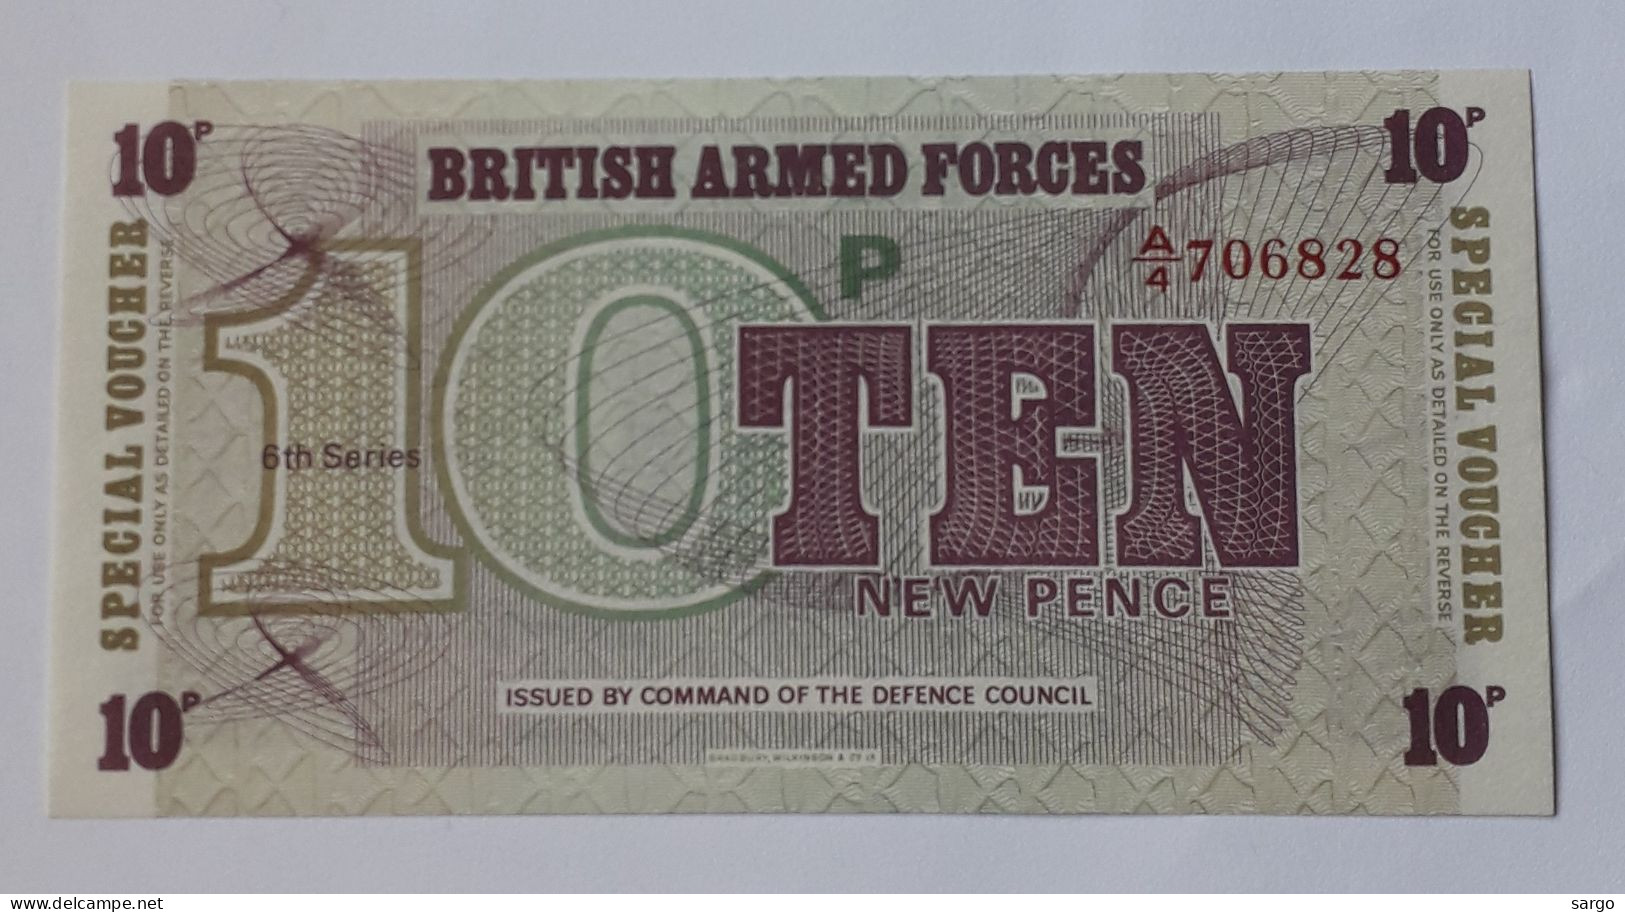 GREAT BRITAIN - BRITISH ARMED FORCES - 10 NEW PENCE - 1972 - PM 48 - BANKNOTES - PAPER MONEY - CARTAMONETA - - Fuerzas Armadas Británicas & Recibos Especiales